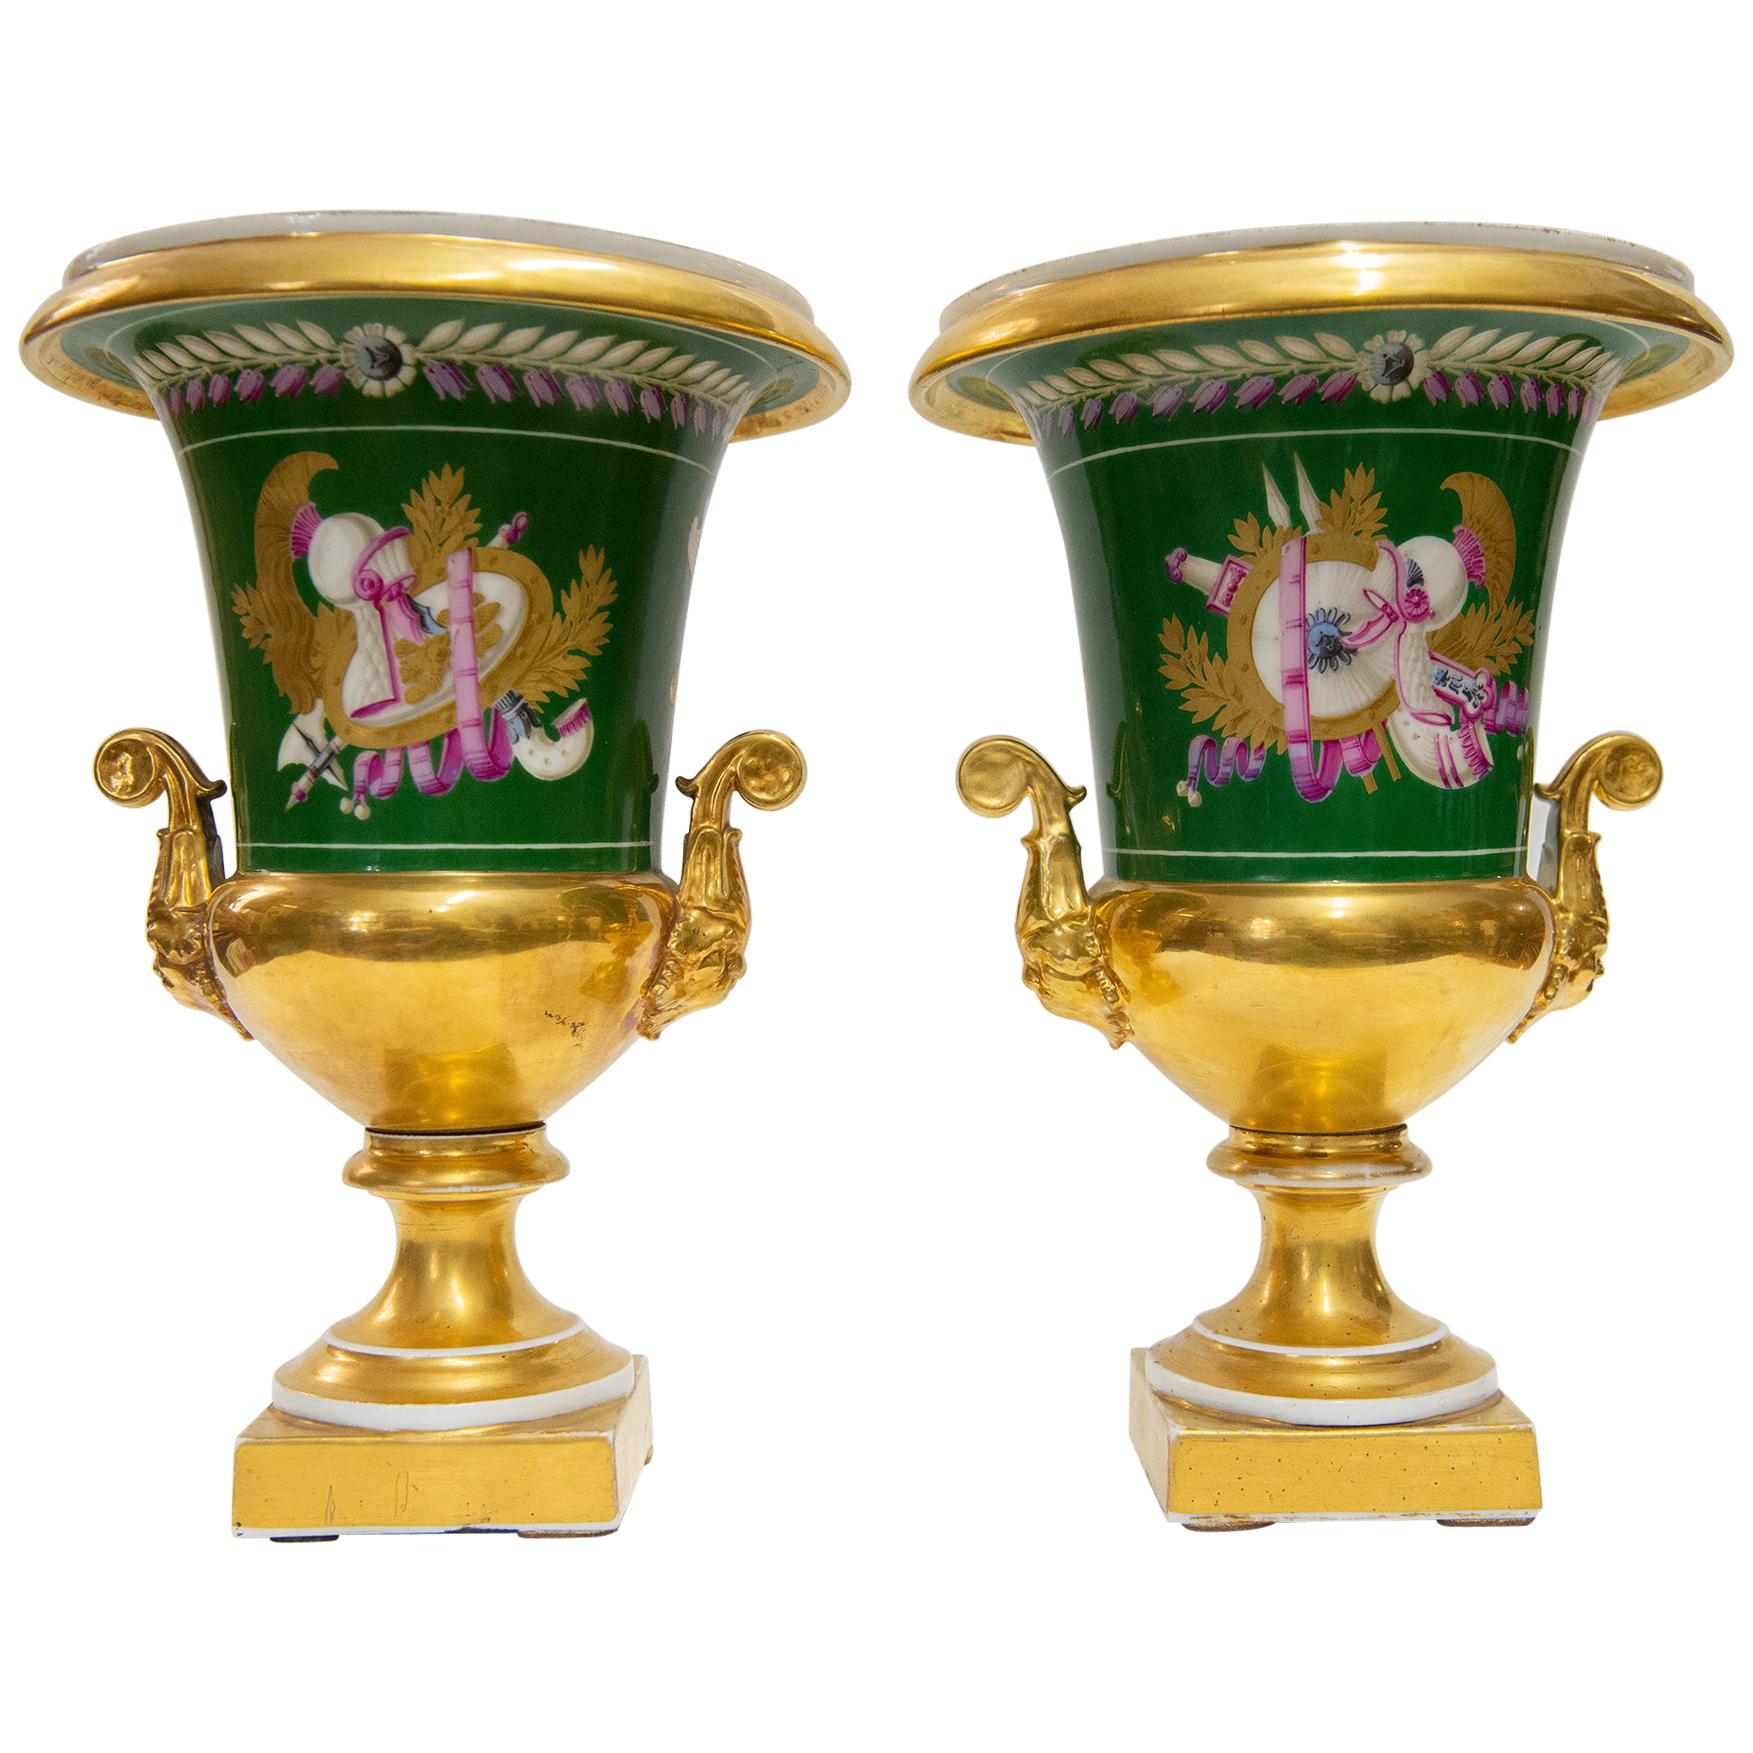 Rare Pair of Antique French Golden Porcelain Sèvres Vases 